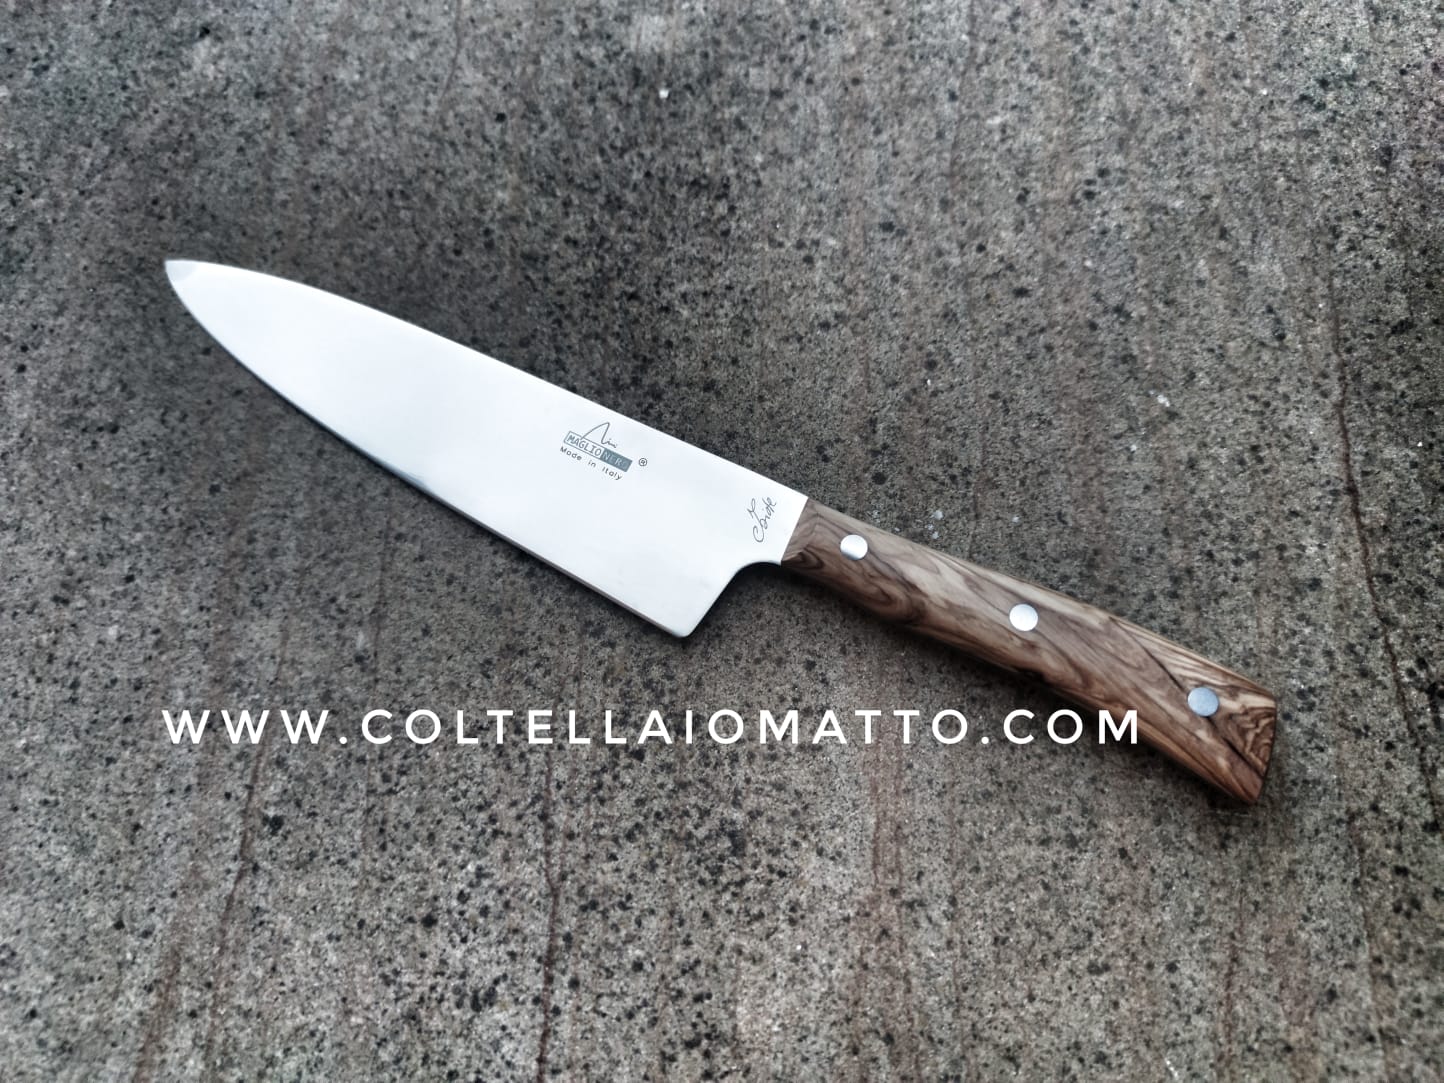 Trinciante 25 cm - Linea Iside - Maglio nero - made in Italy - UV1625 -  Coltellaiomatto